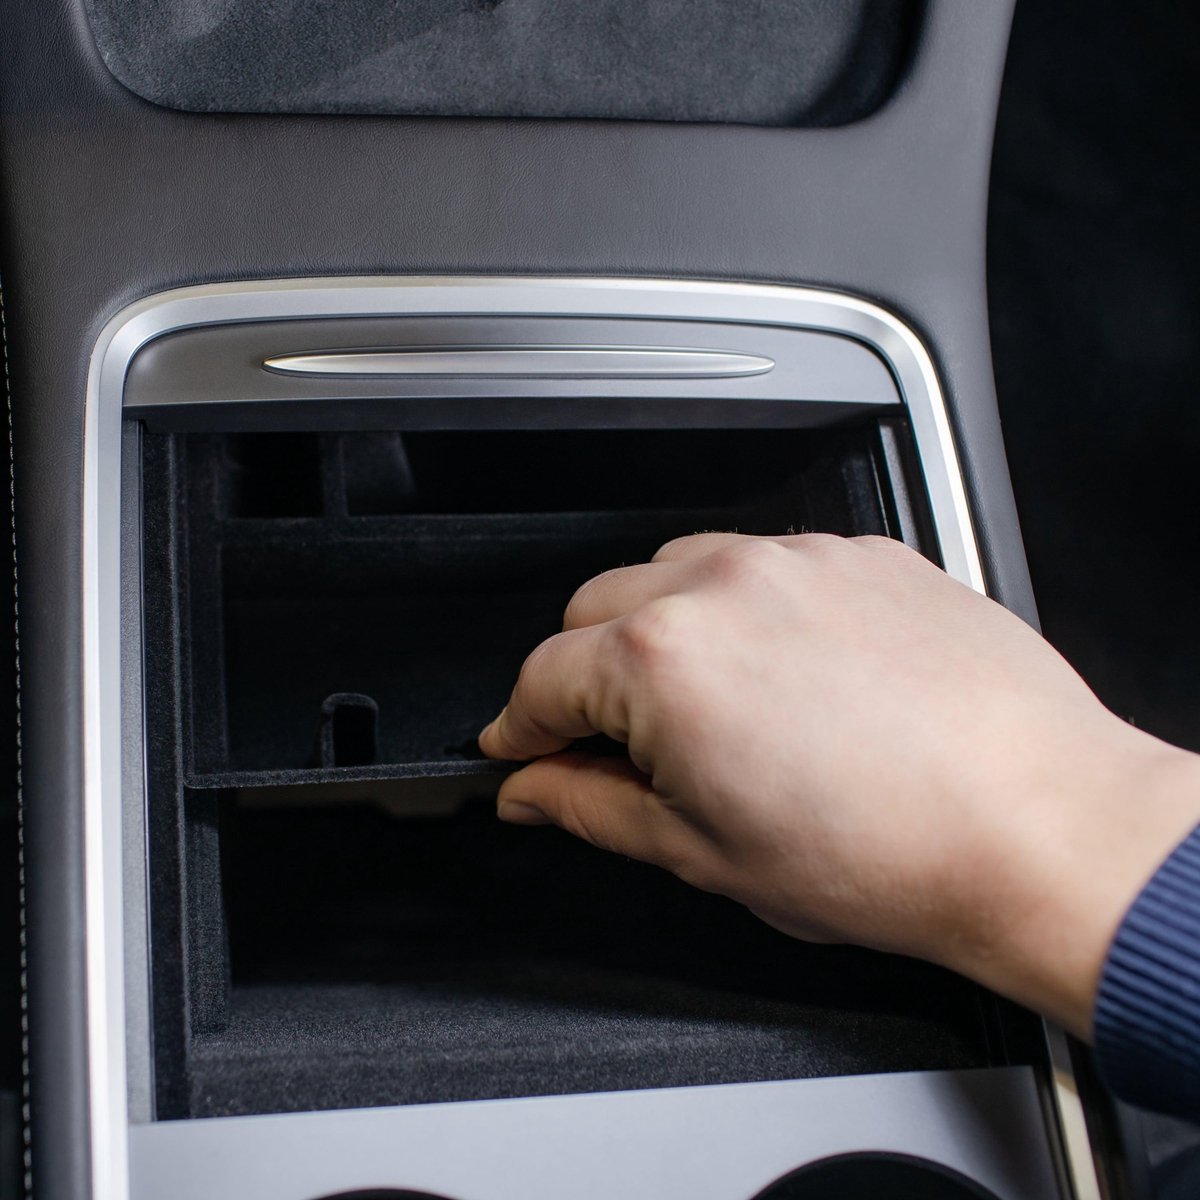 KKmoon Boîte de rangement pour accoudoir de voiture boîte pour gants antidérapante double couche convient pour Tesla Model 3 2018-2019 organiseur de voiture pour console centrale